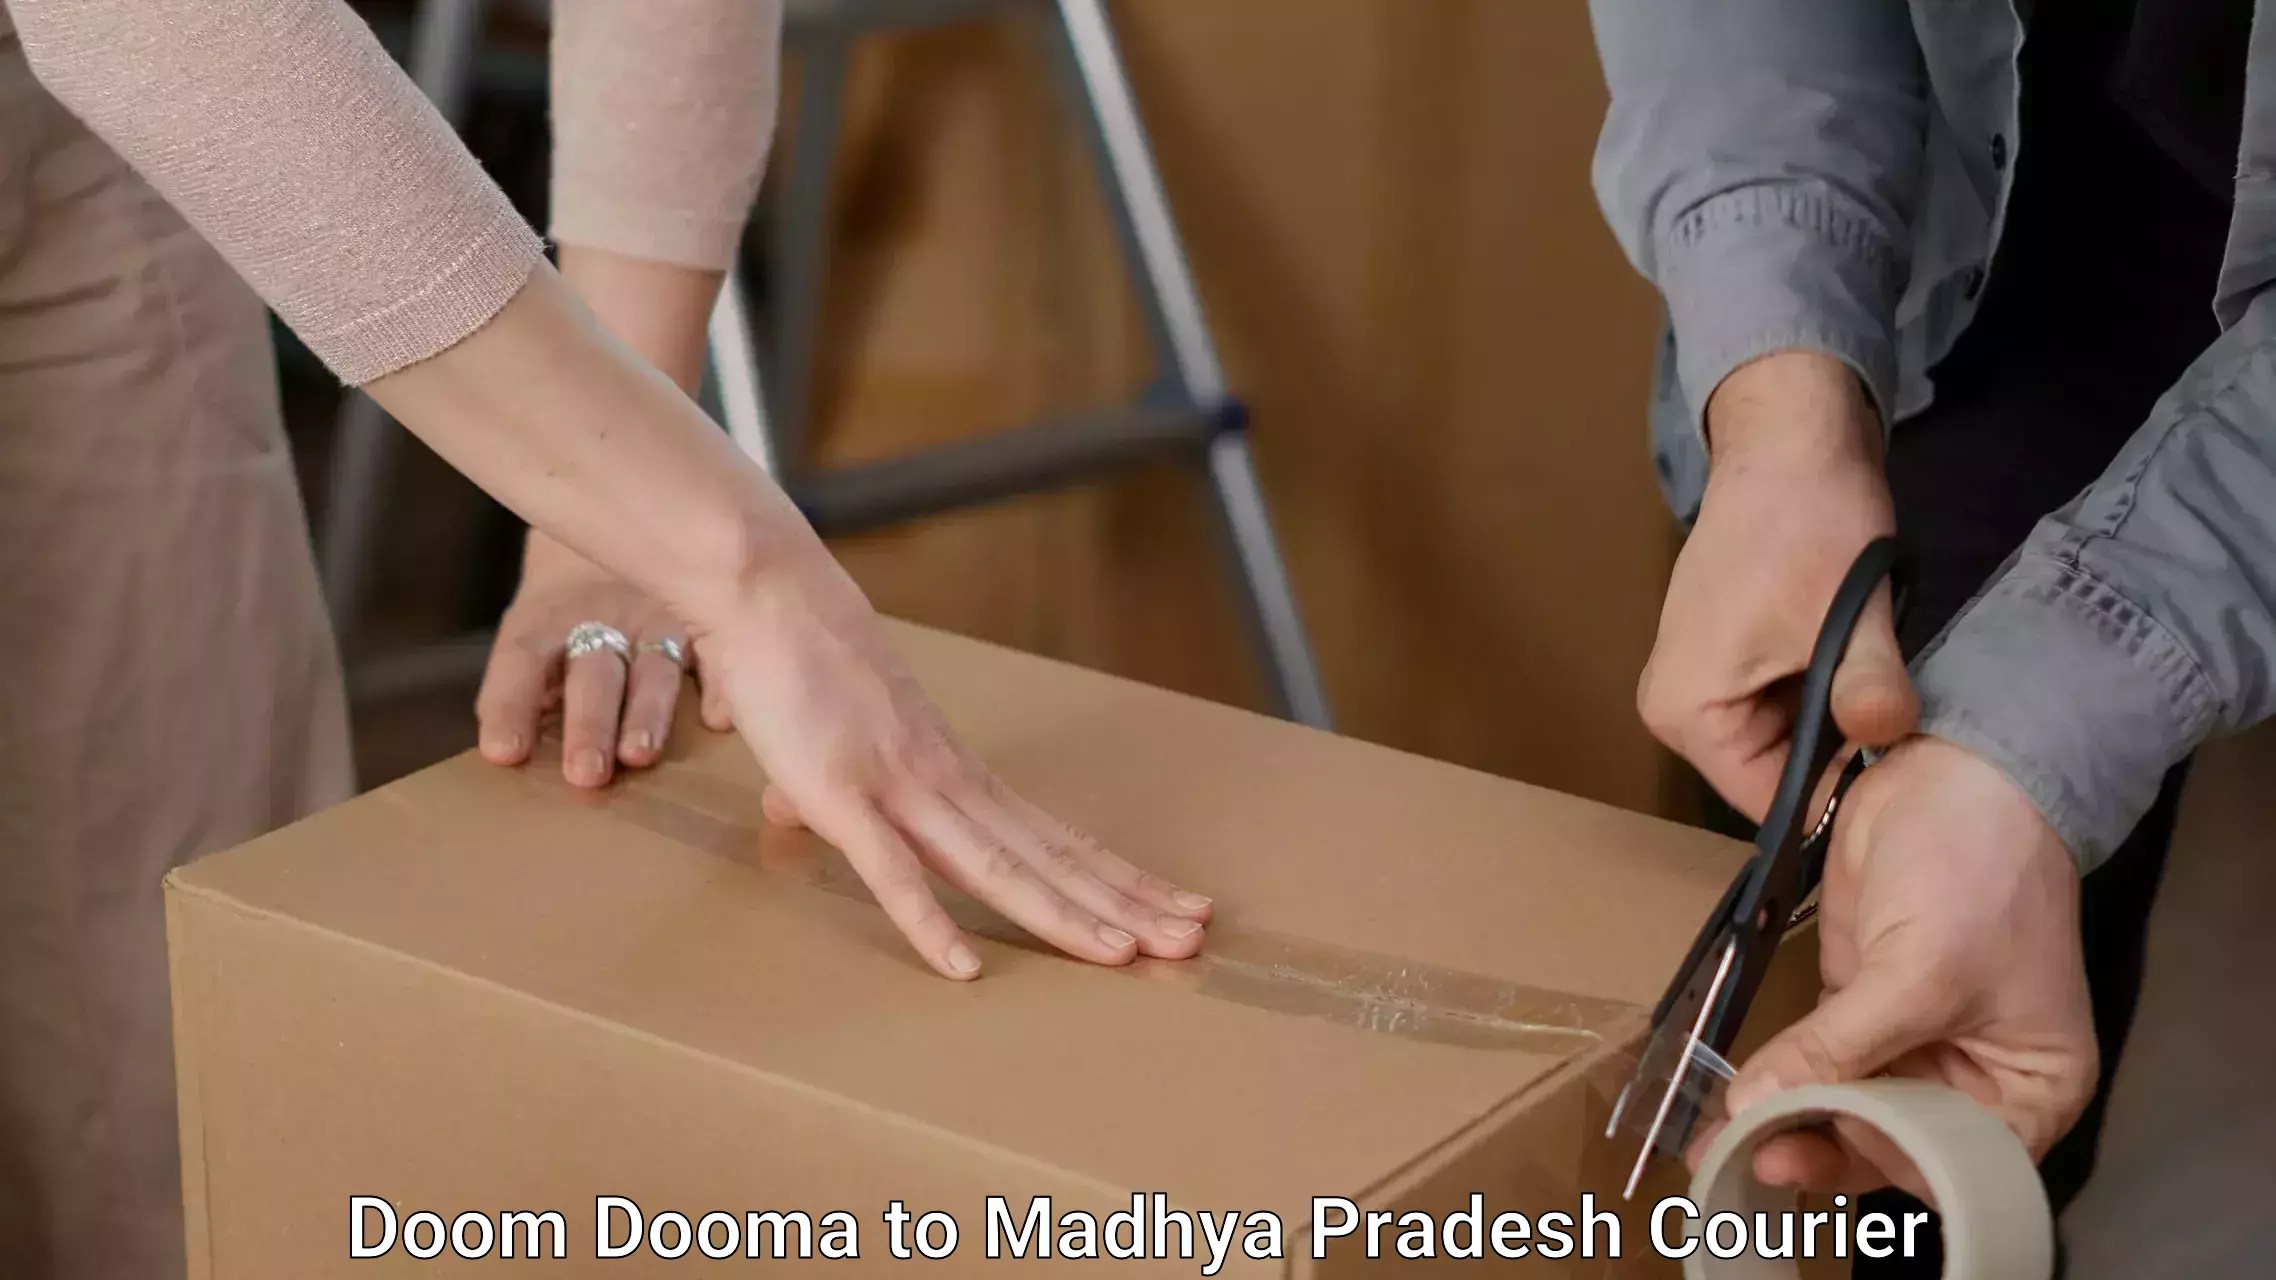 Efficient moving company Doom Dooma to Shivpuri